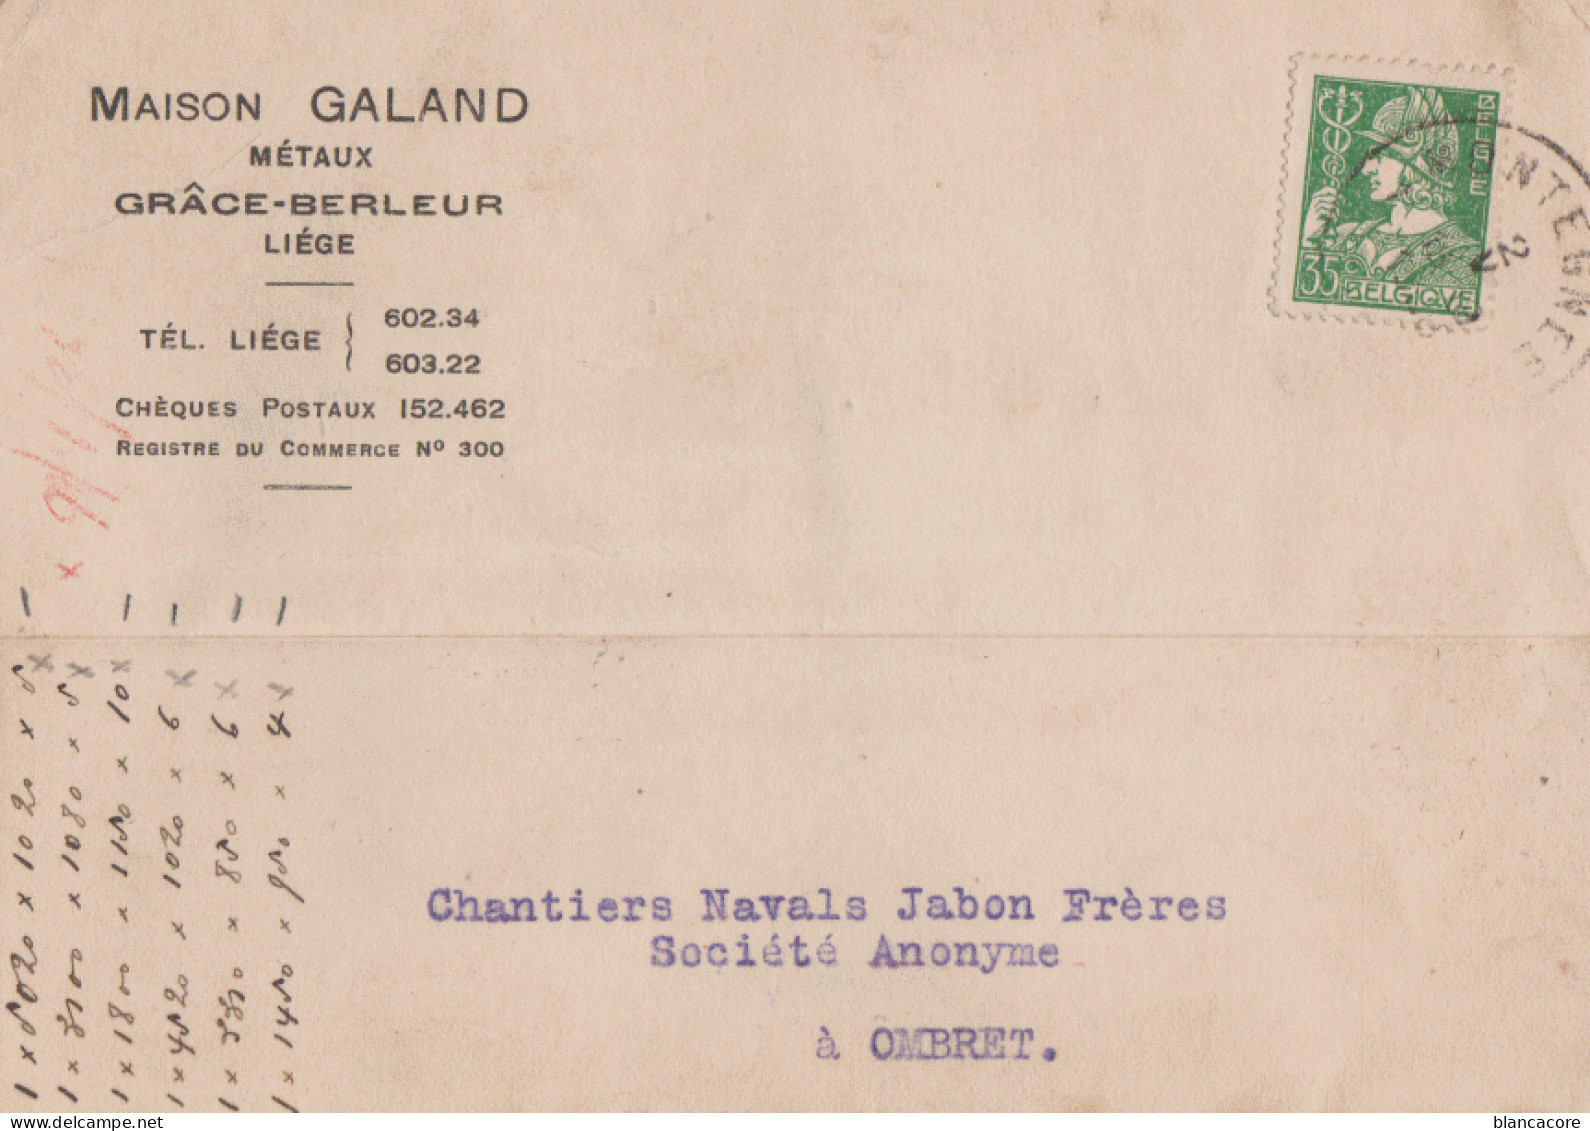 GRACE BERLEUR  / Commune De Grâce Hollogne  GALAND  Métaux Fers & Aciers 1936 - Grâce-Hollogne